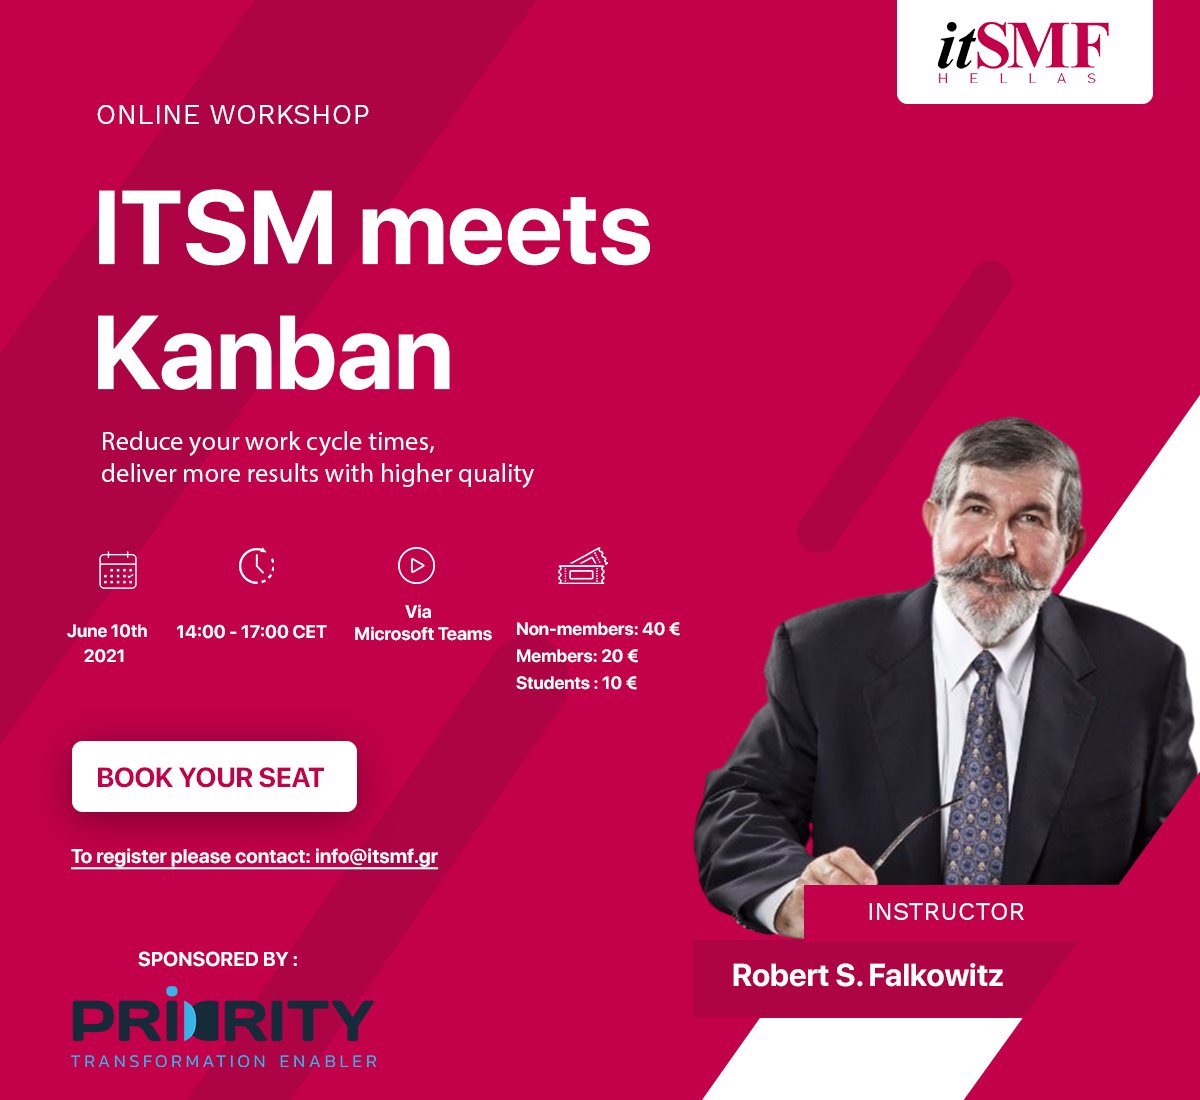 ITSM meets Kanban Online Workshop